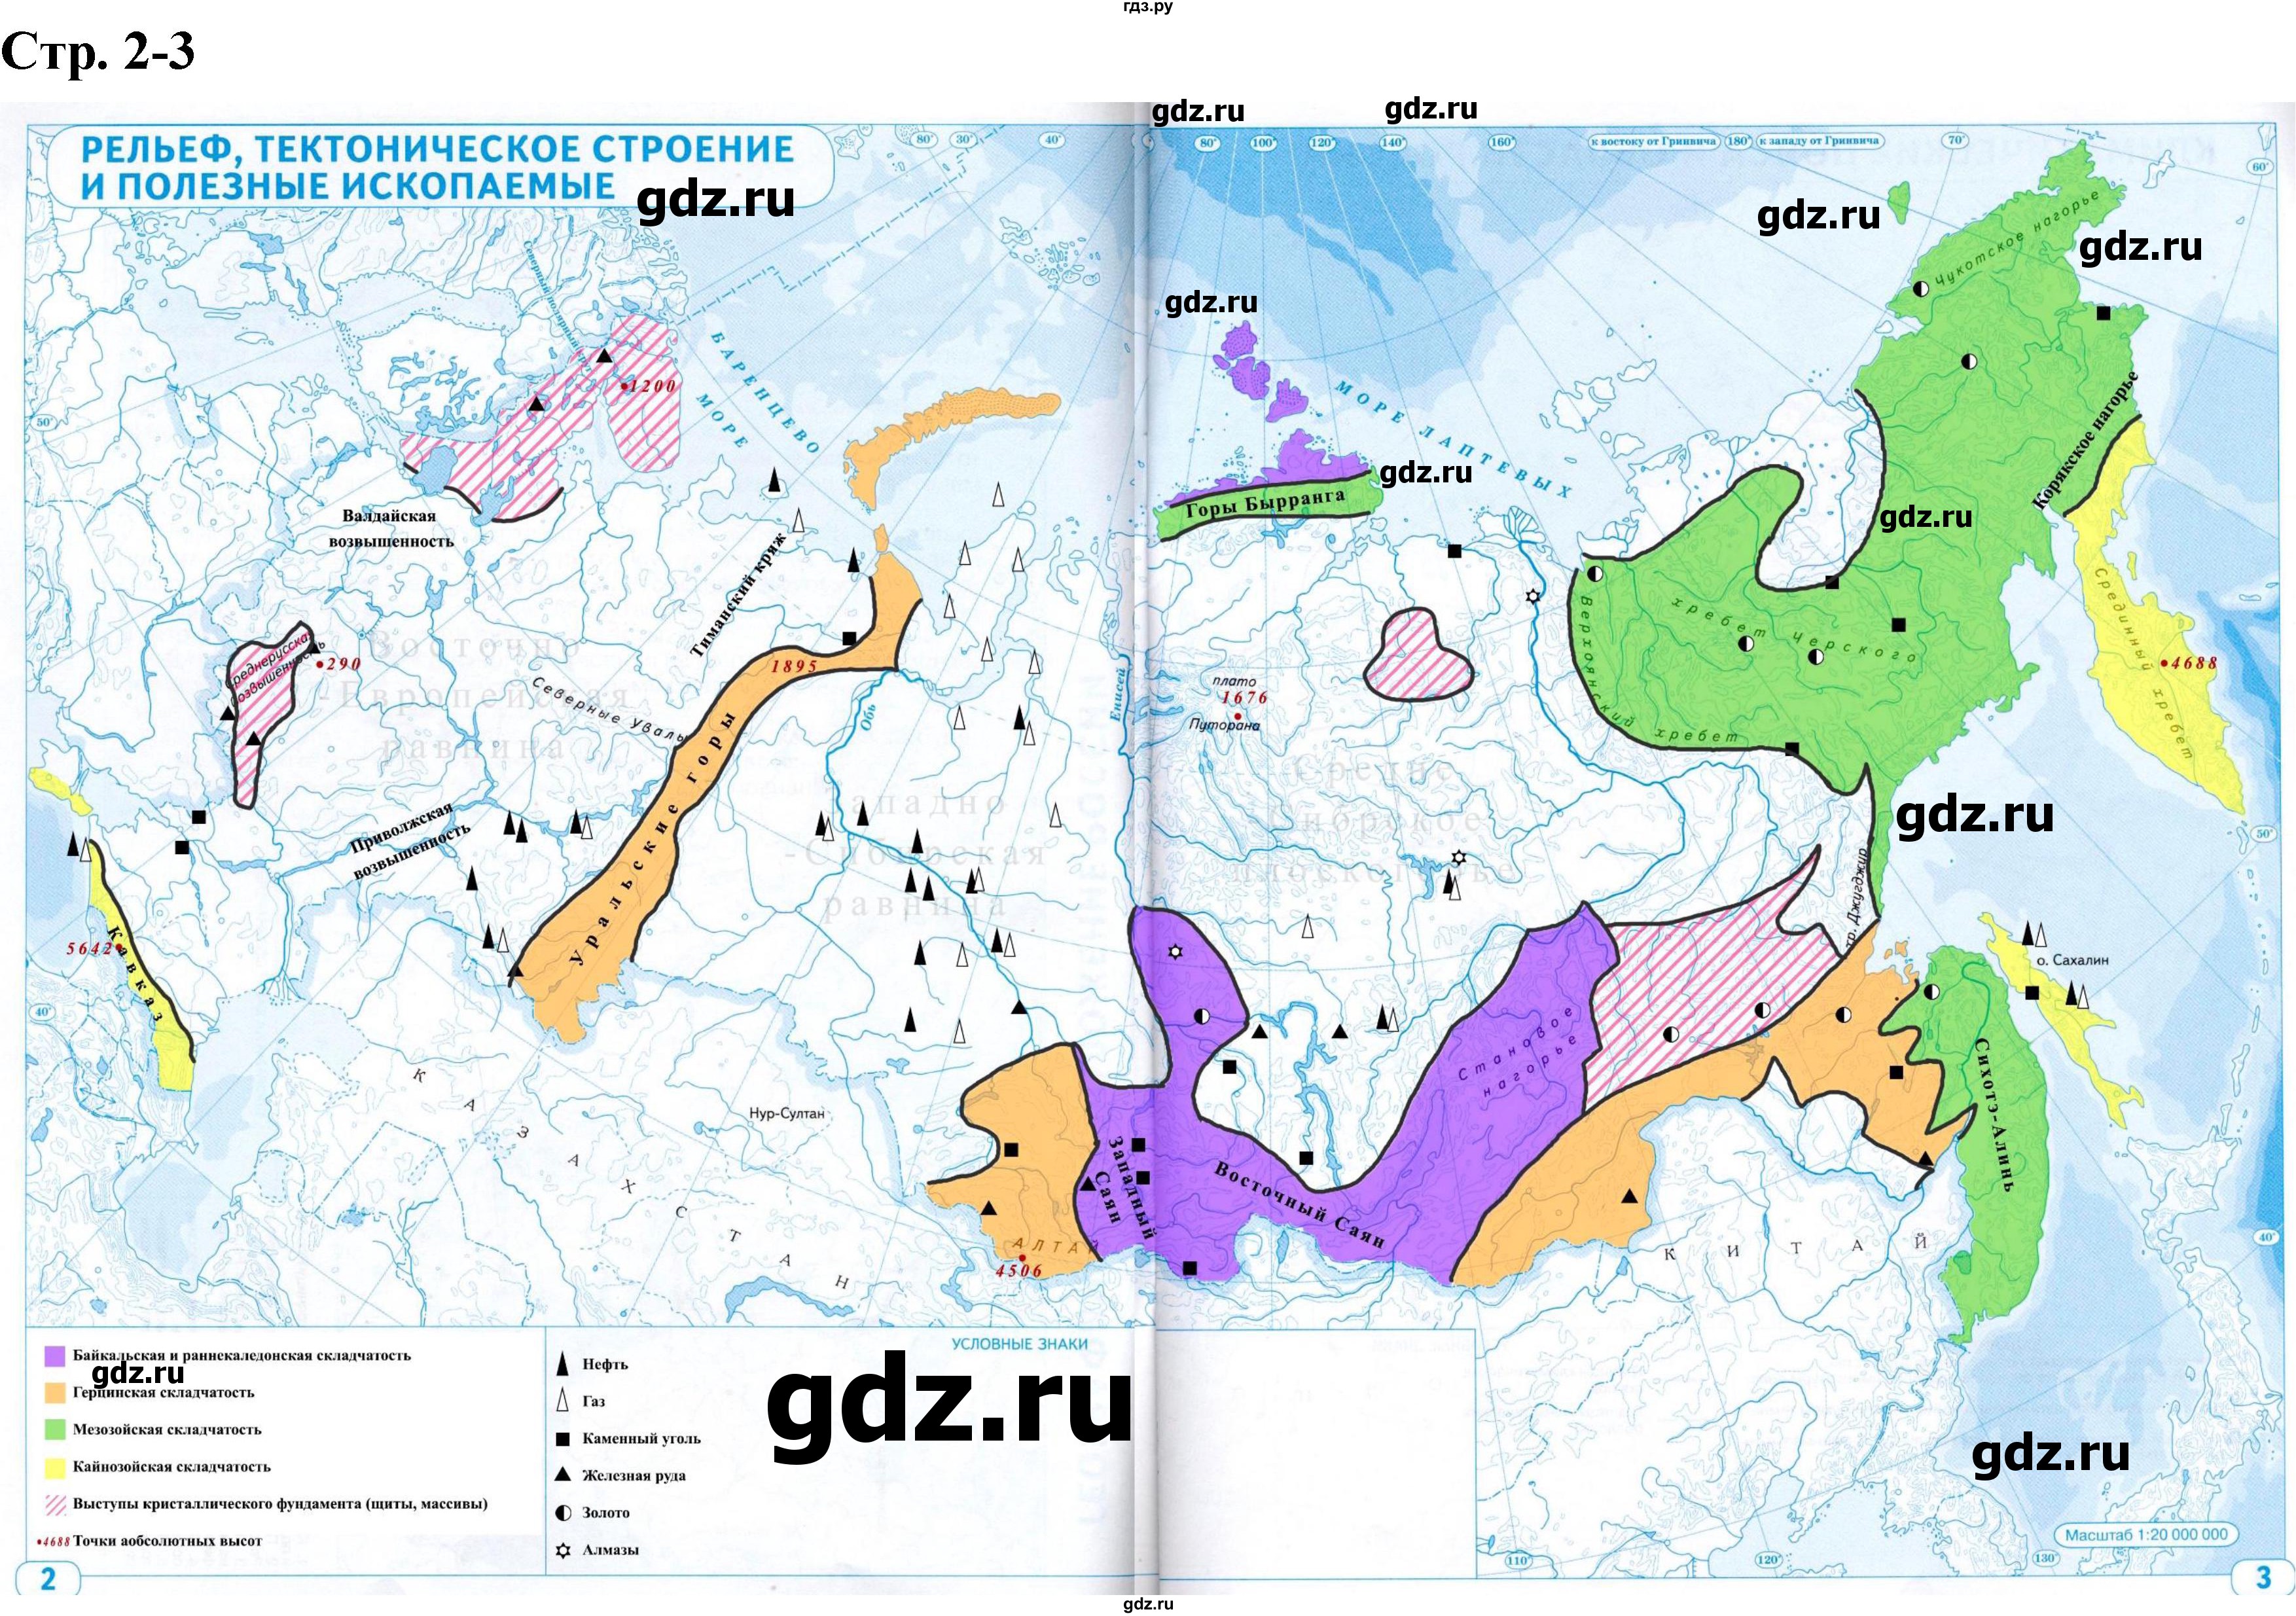 ГДЗ по географии 8 класс Курбский атлас с контурными картами  контурные карты - стр.2-3, Решебник